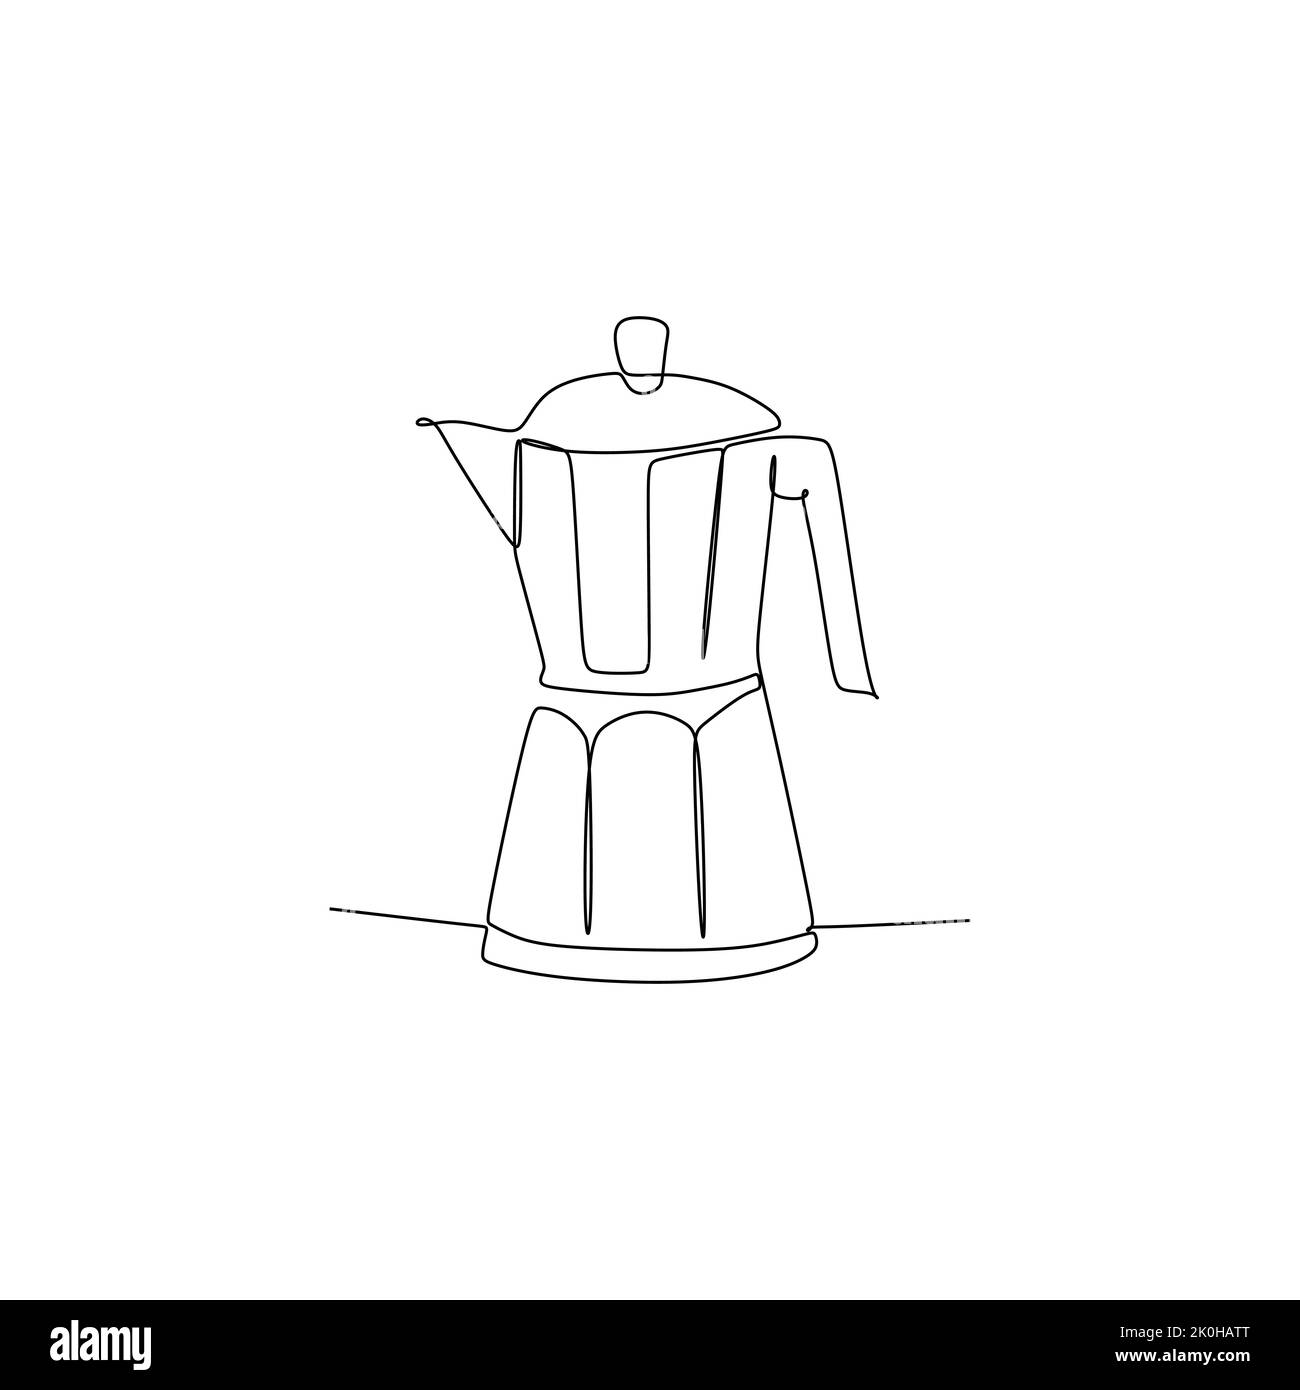 Moka Kaffeekocher - einfache kontinuierliche eine Linie Zeichnung Vektor-Illustration für Lebensmittel und Getränke Konzept Stock Vektor